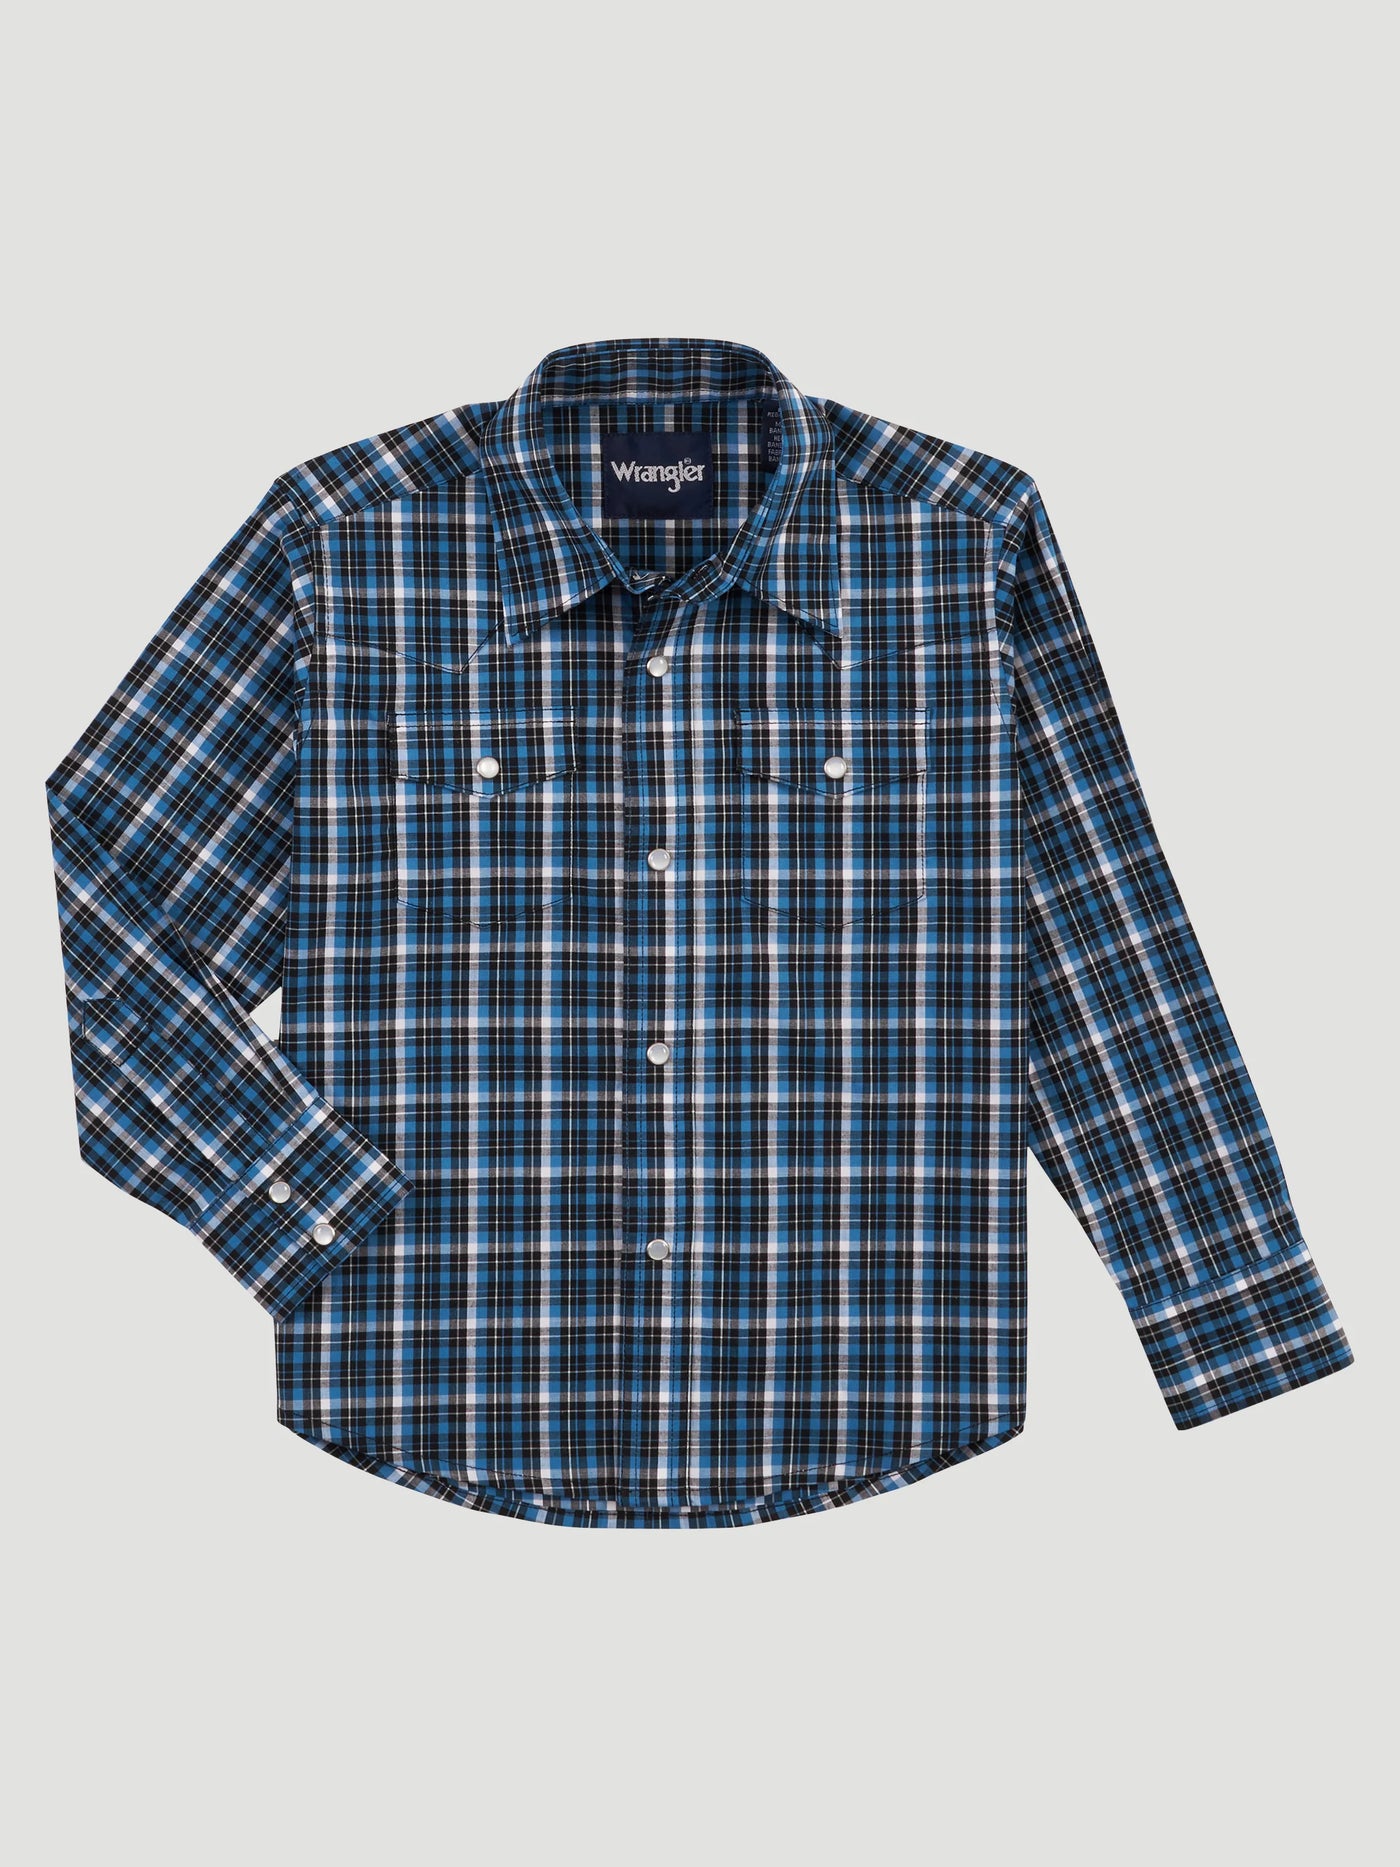 Wrangler Boy's Blue Plaid Snap Shirt